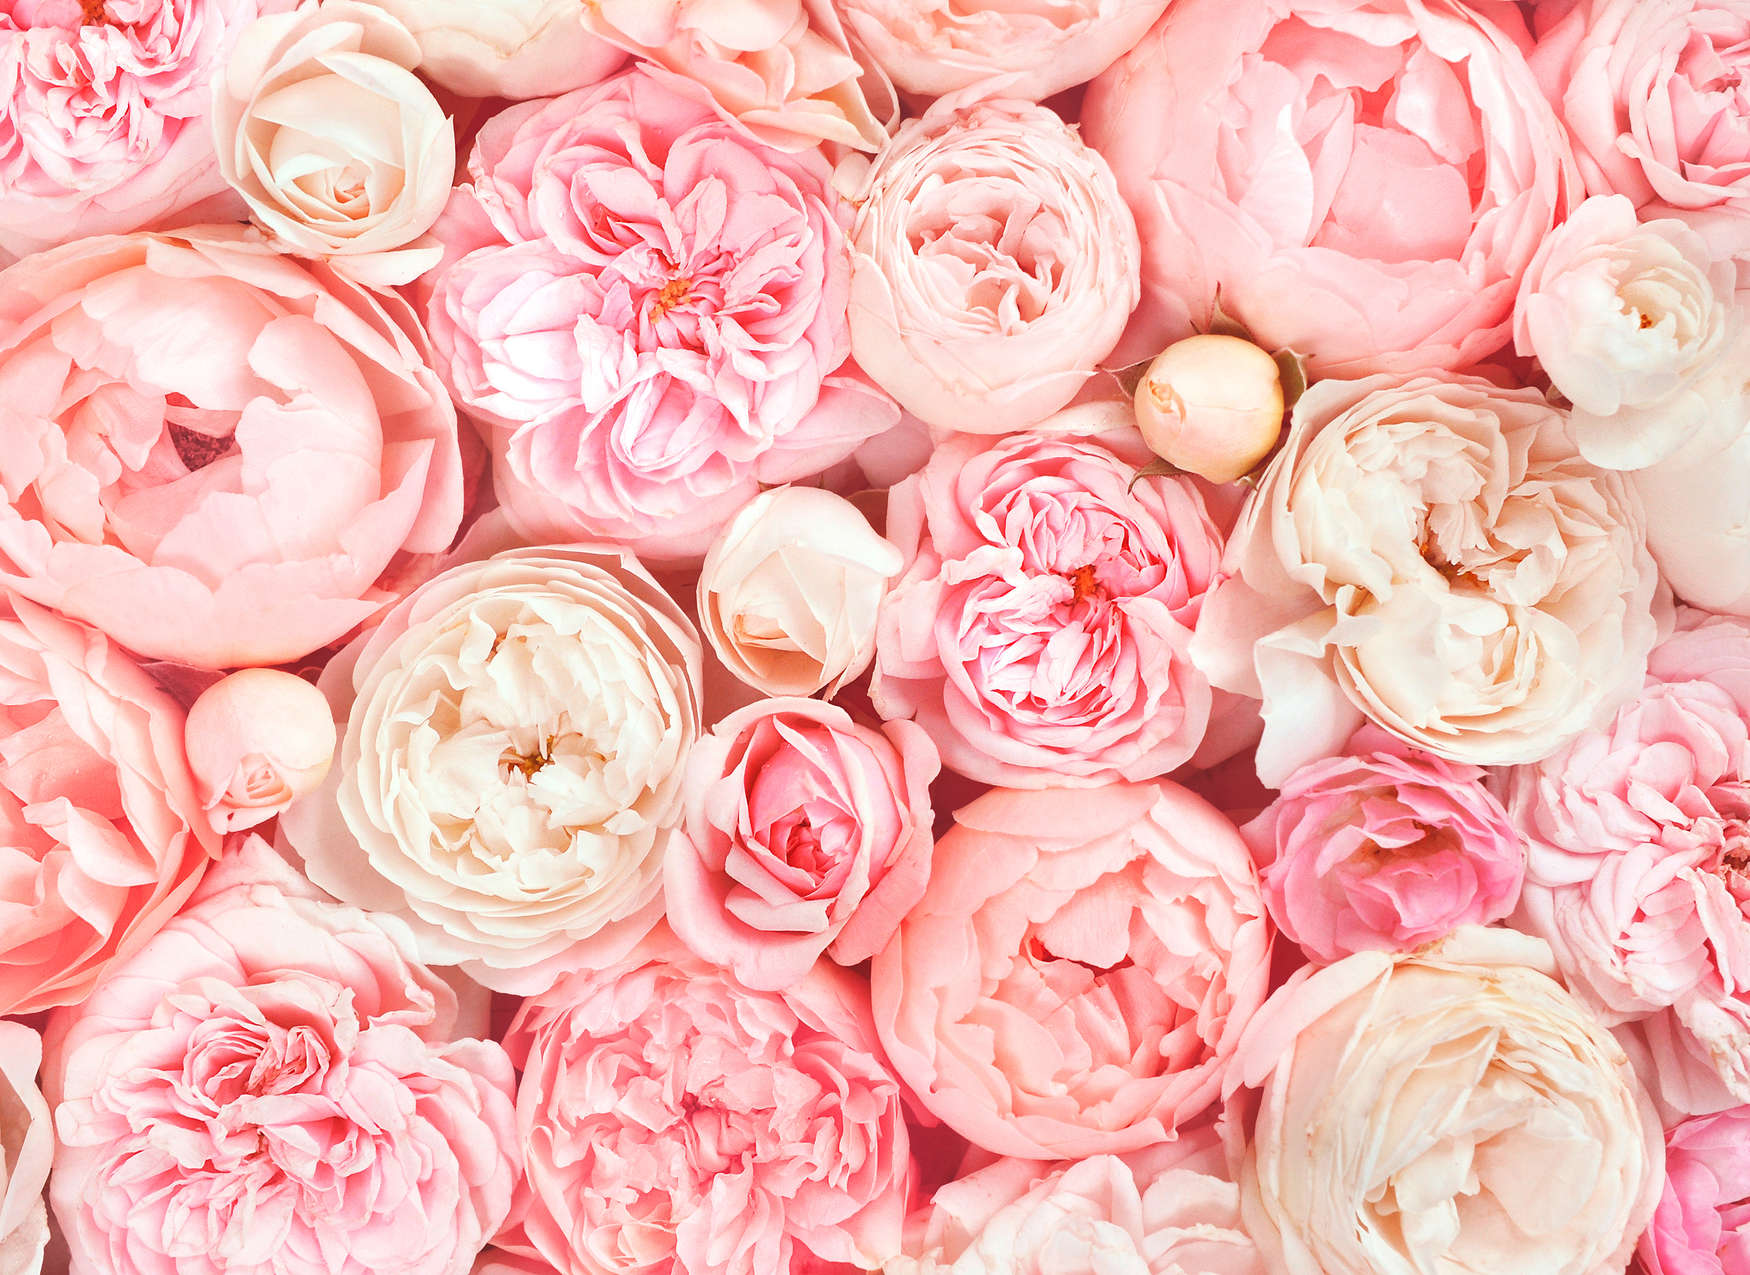             Fototapete mit Rosen Motiv – Rosa, Weiß, Creme
        